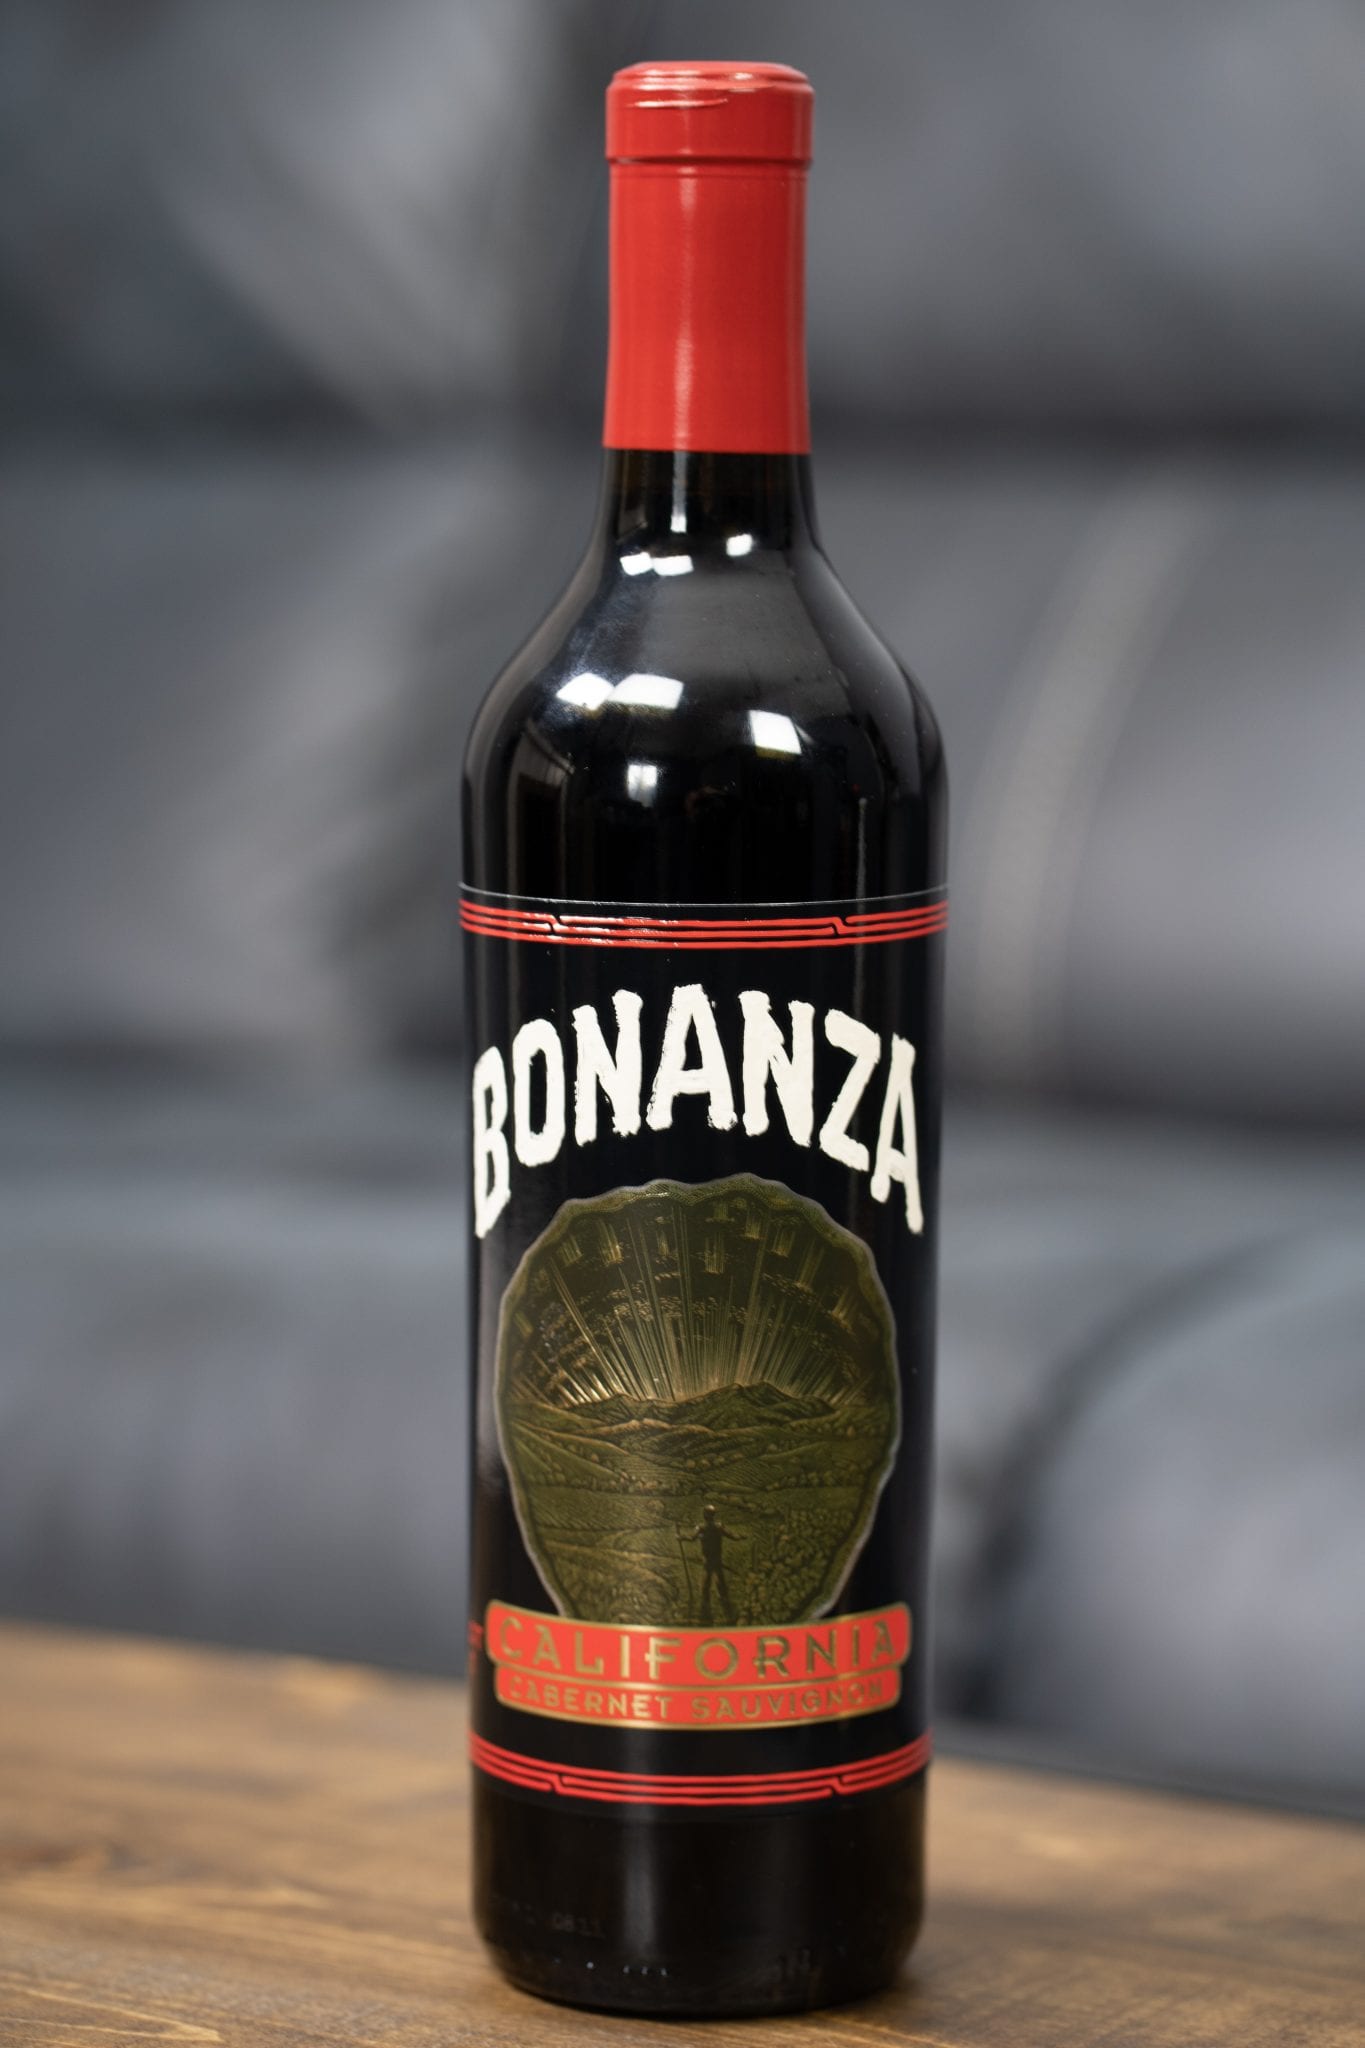 Bonanza wine - Search